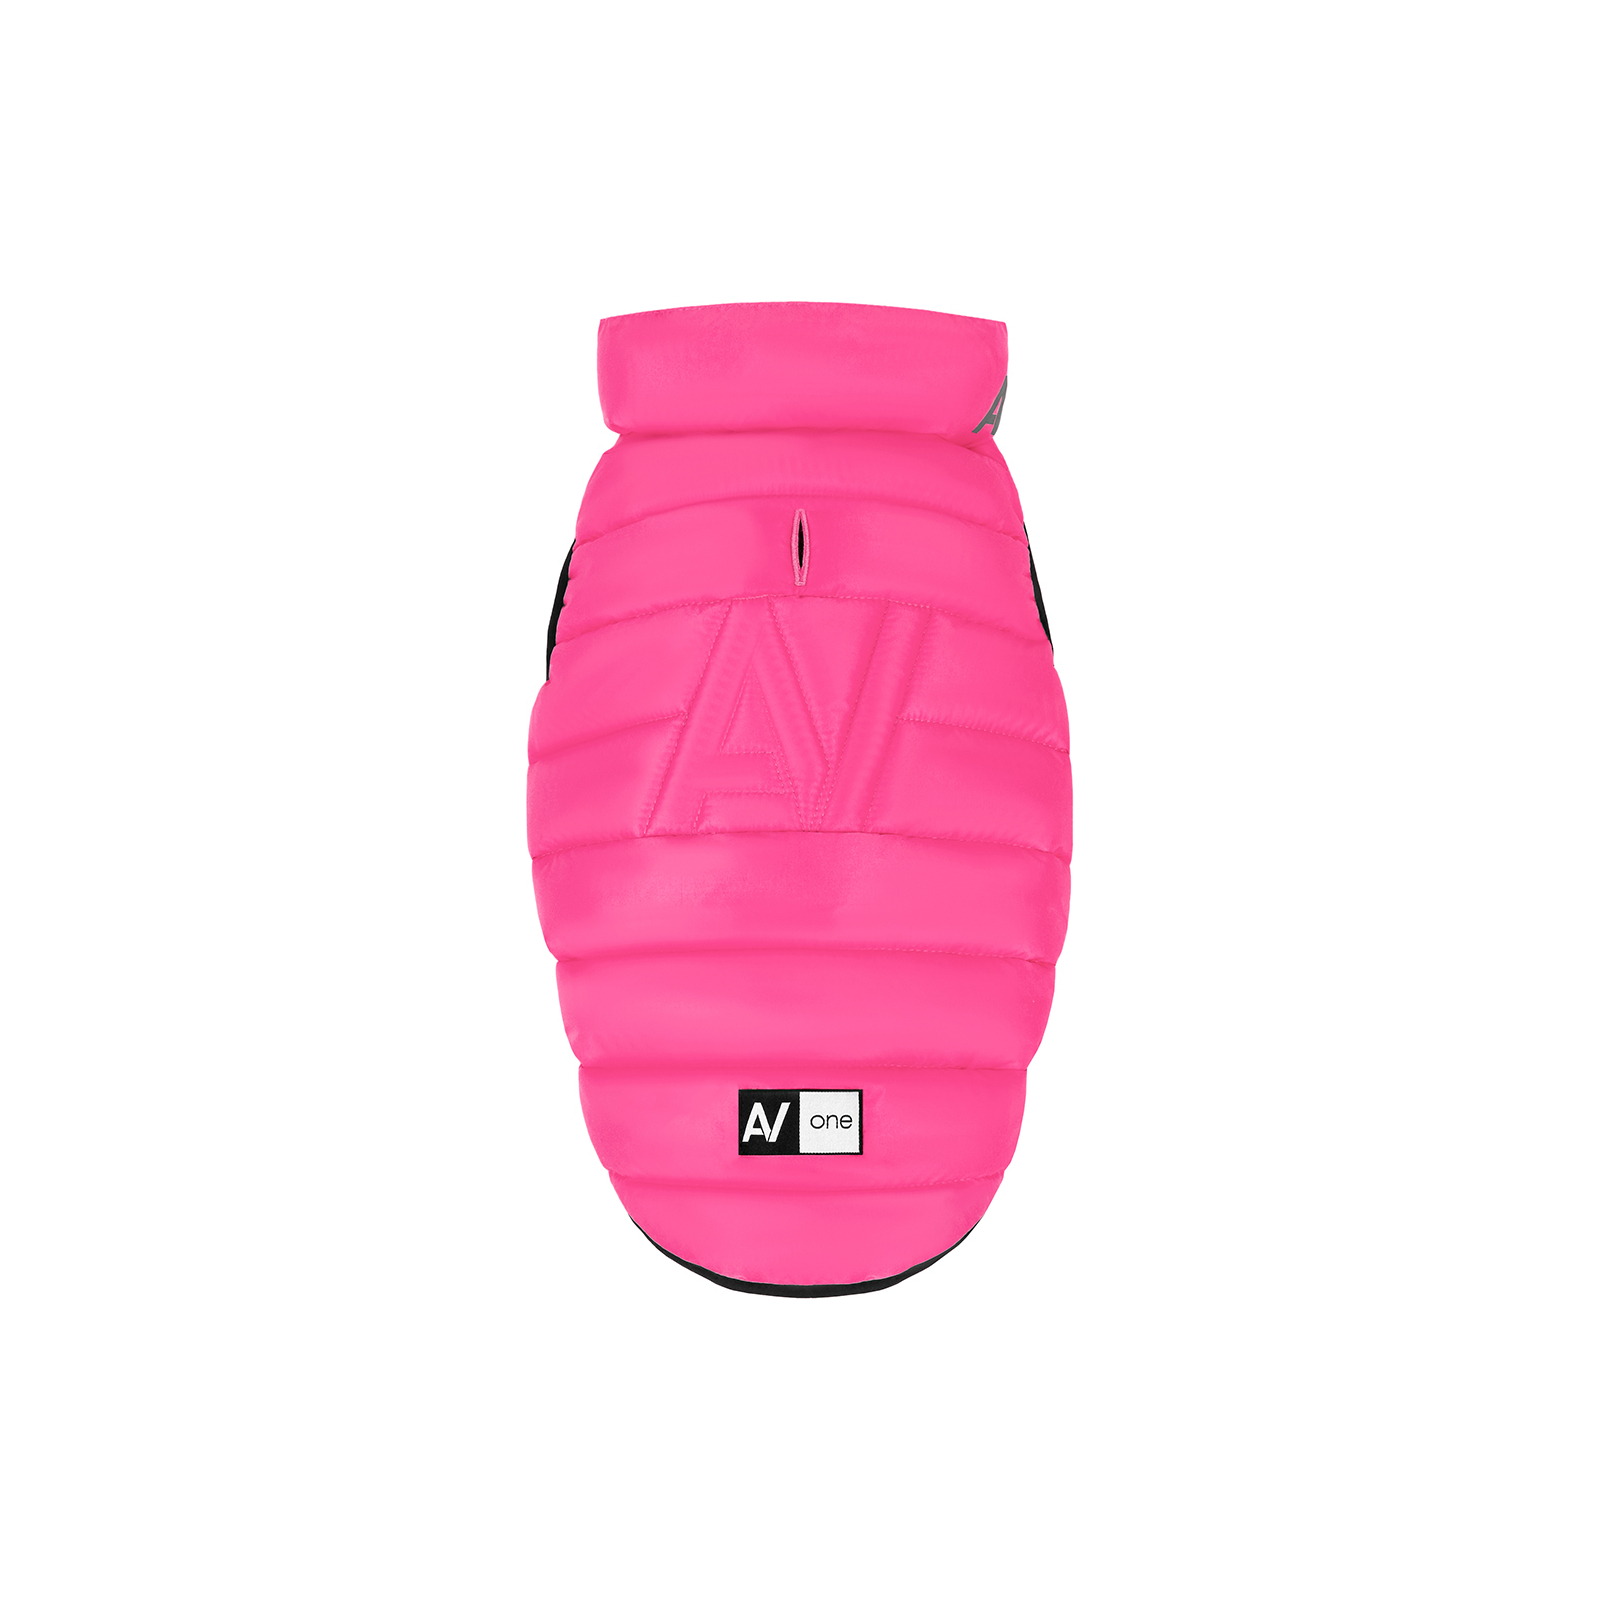 Курточка для животных Airy Vest One М 45 розовая (20687) изображение 2